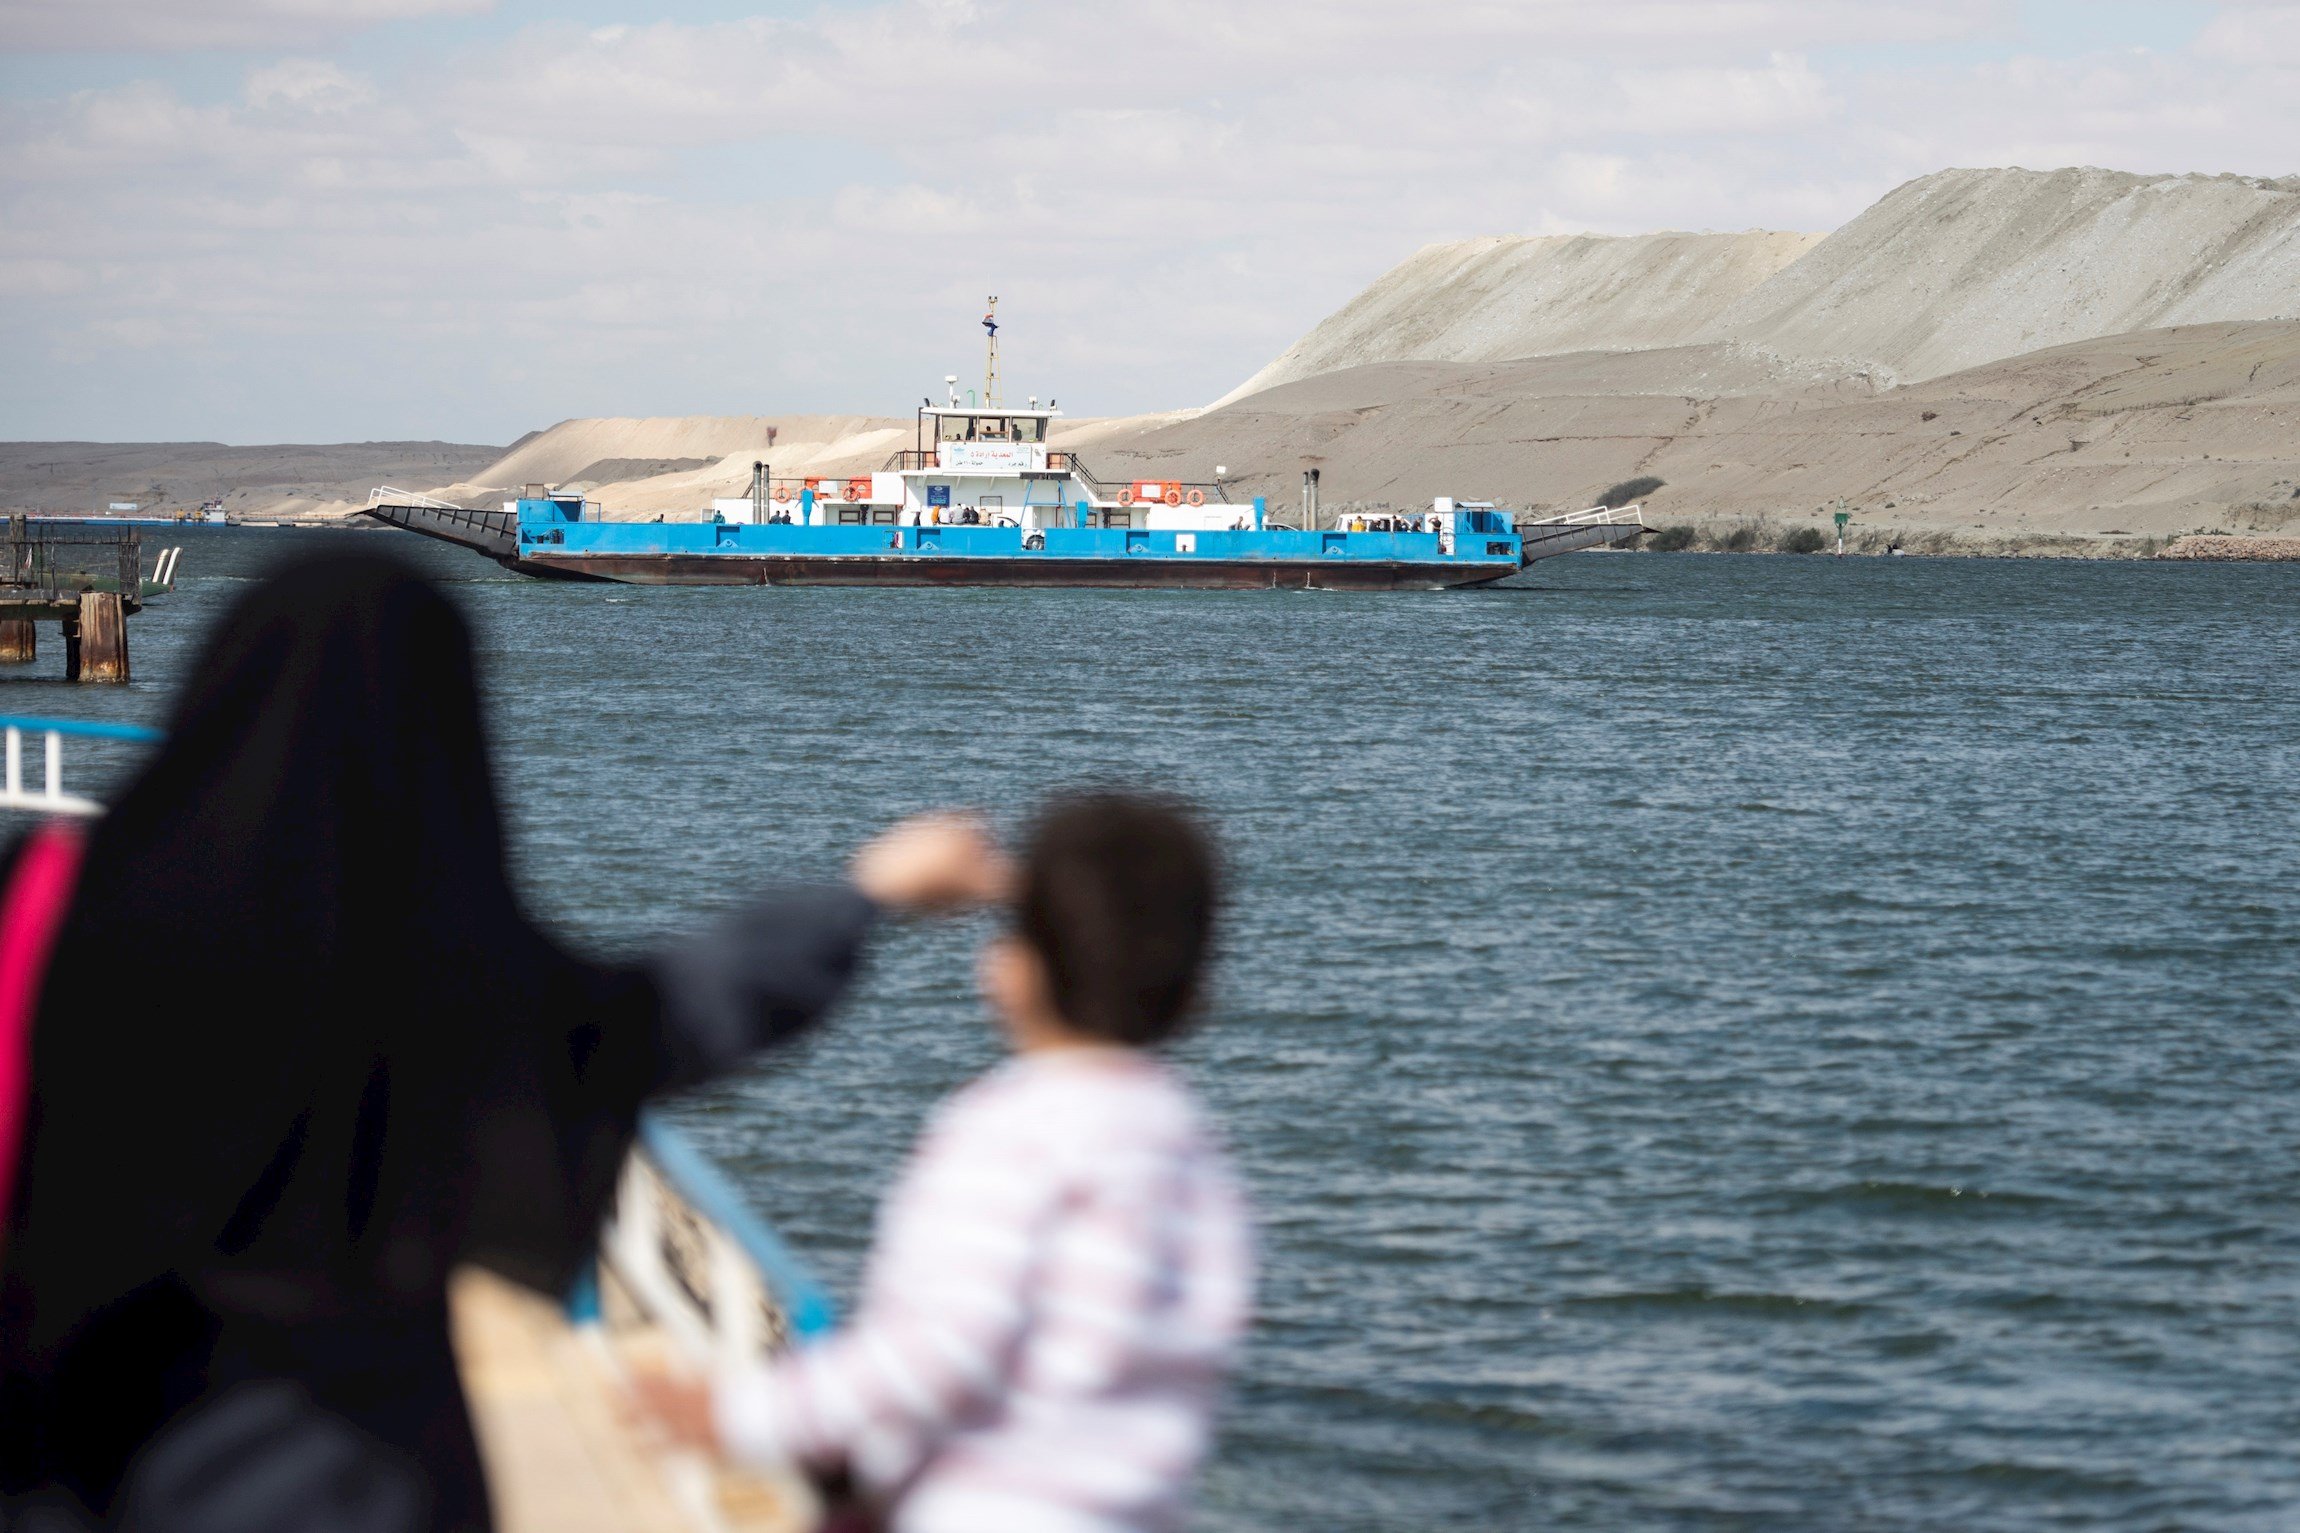 El canal de Suez reobre després d'aconseguir desencallar el vaixell Ever Given